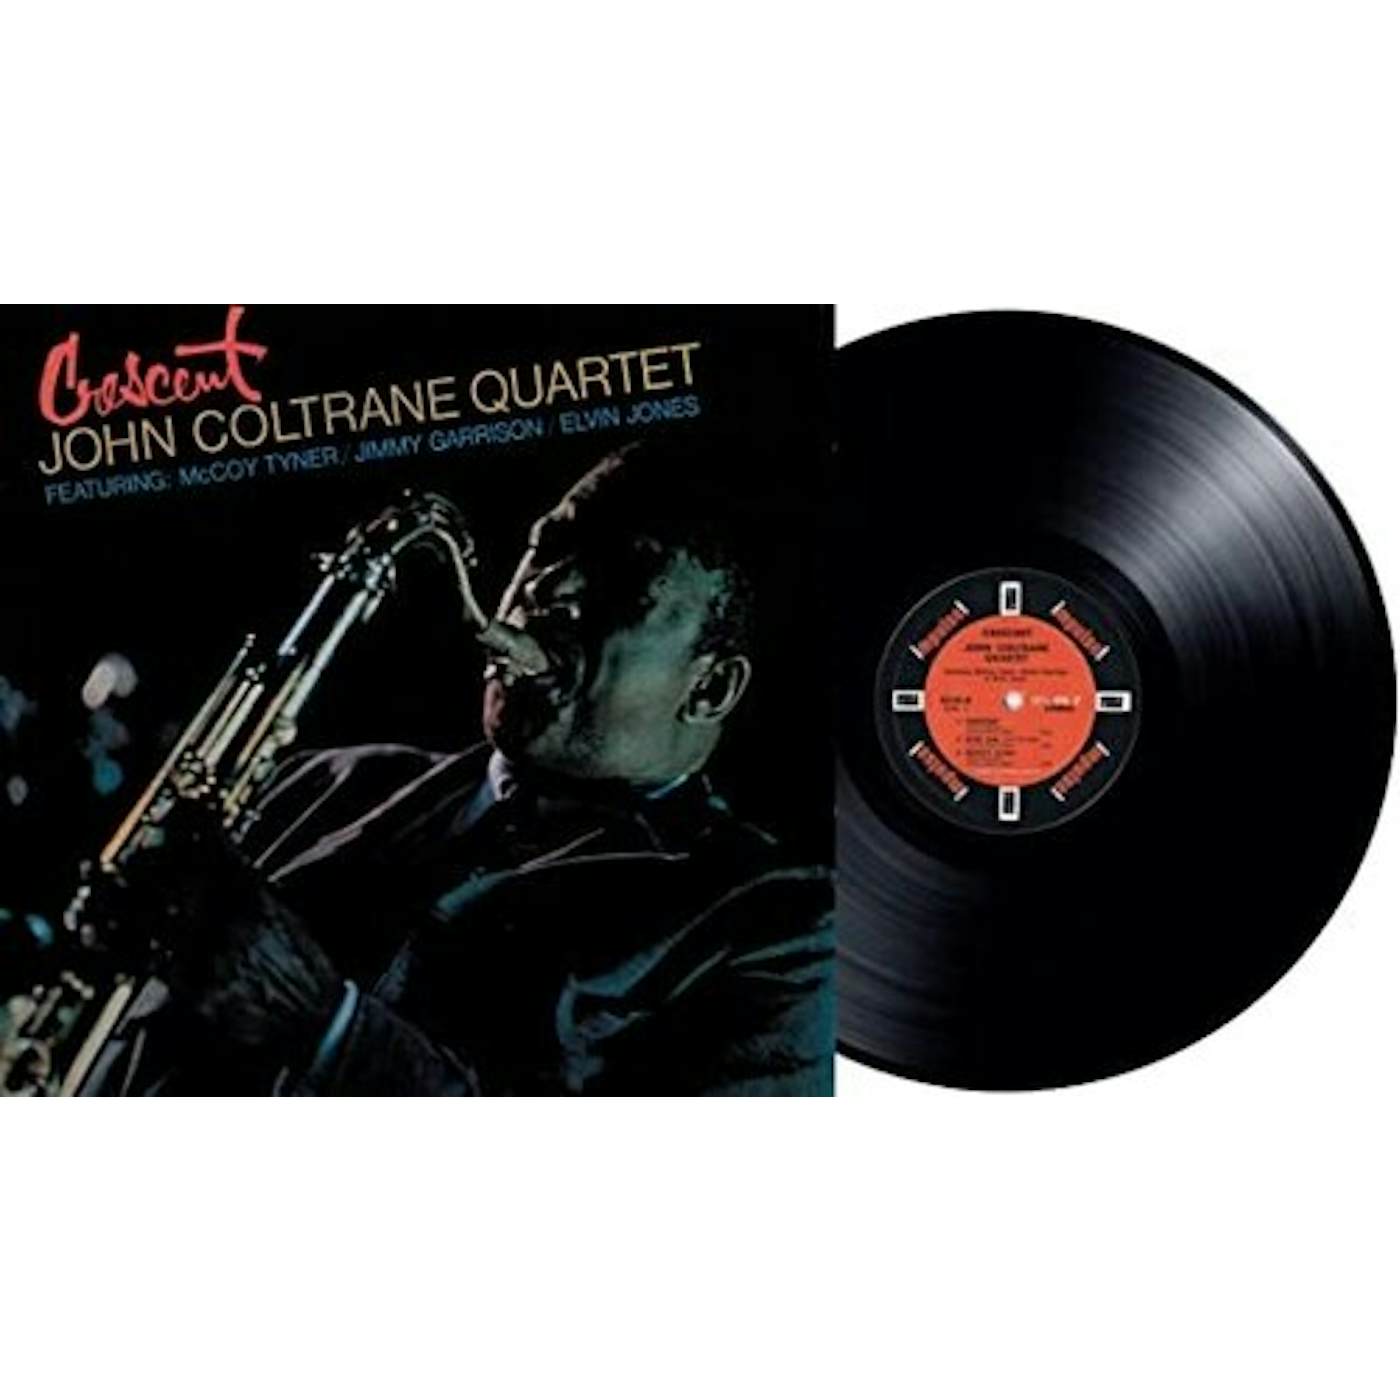 John Coltrane Quartet CRESCENT (VERVE ACOUSTIC SOUNDS SERIES) Vinyl Record